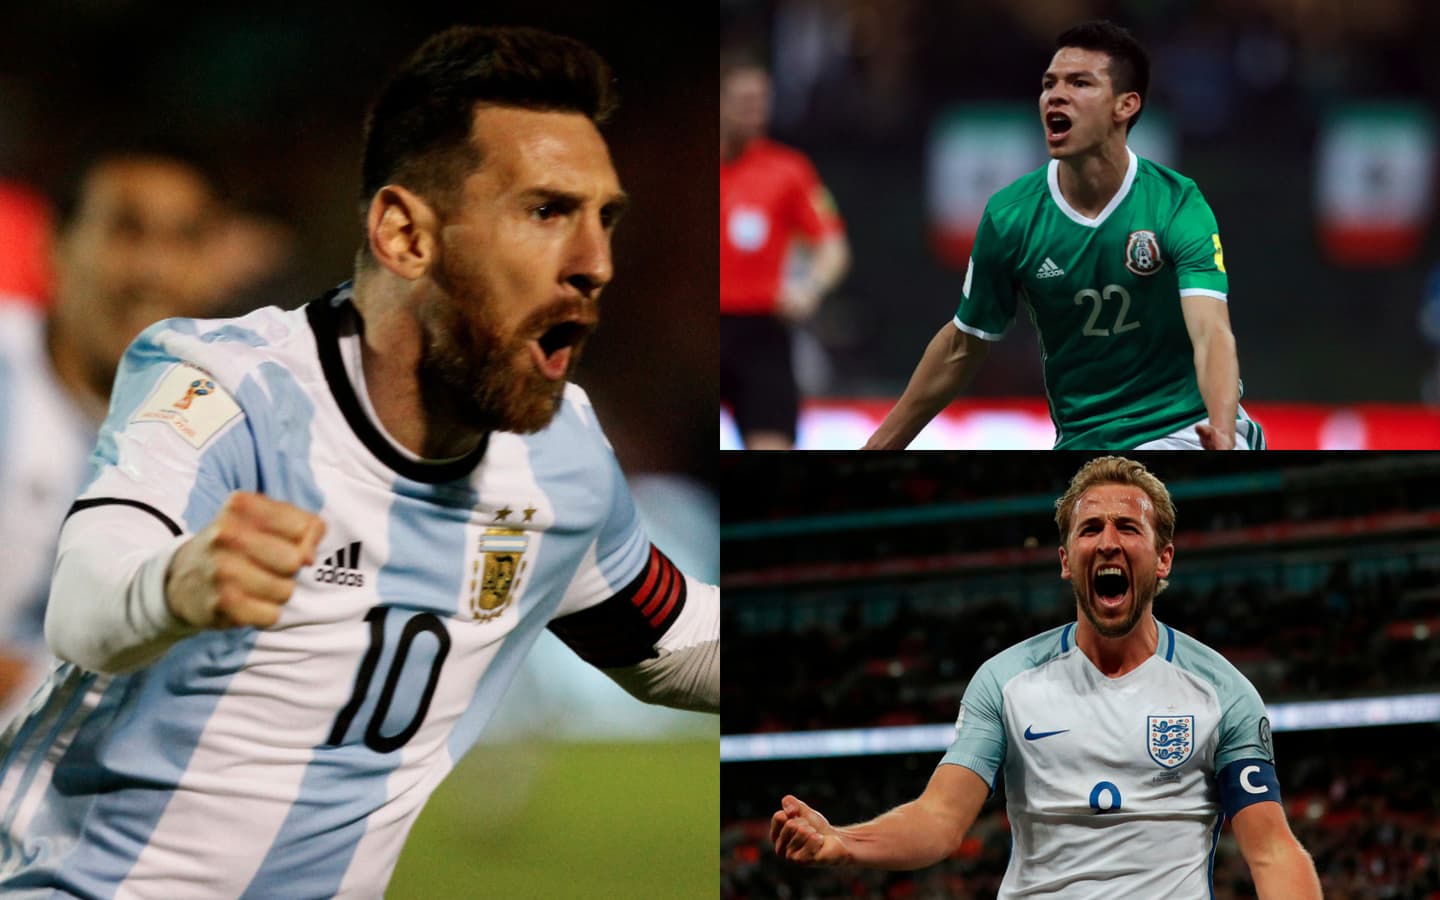 Uruguay en el top-10 de los países con más futbolistas militando en el  exterior